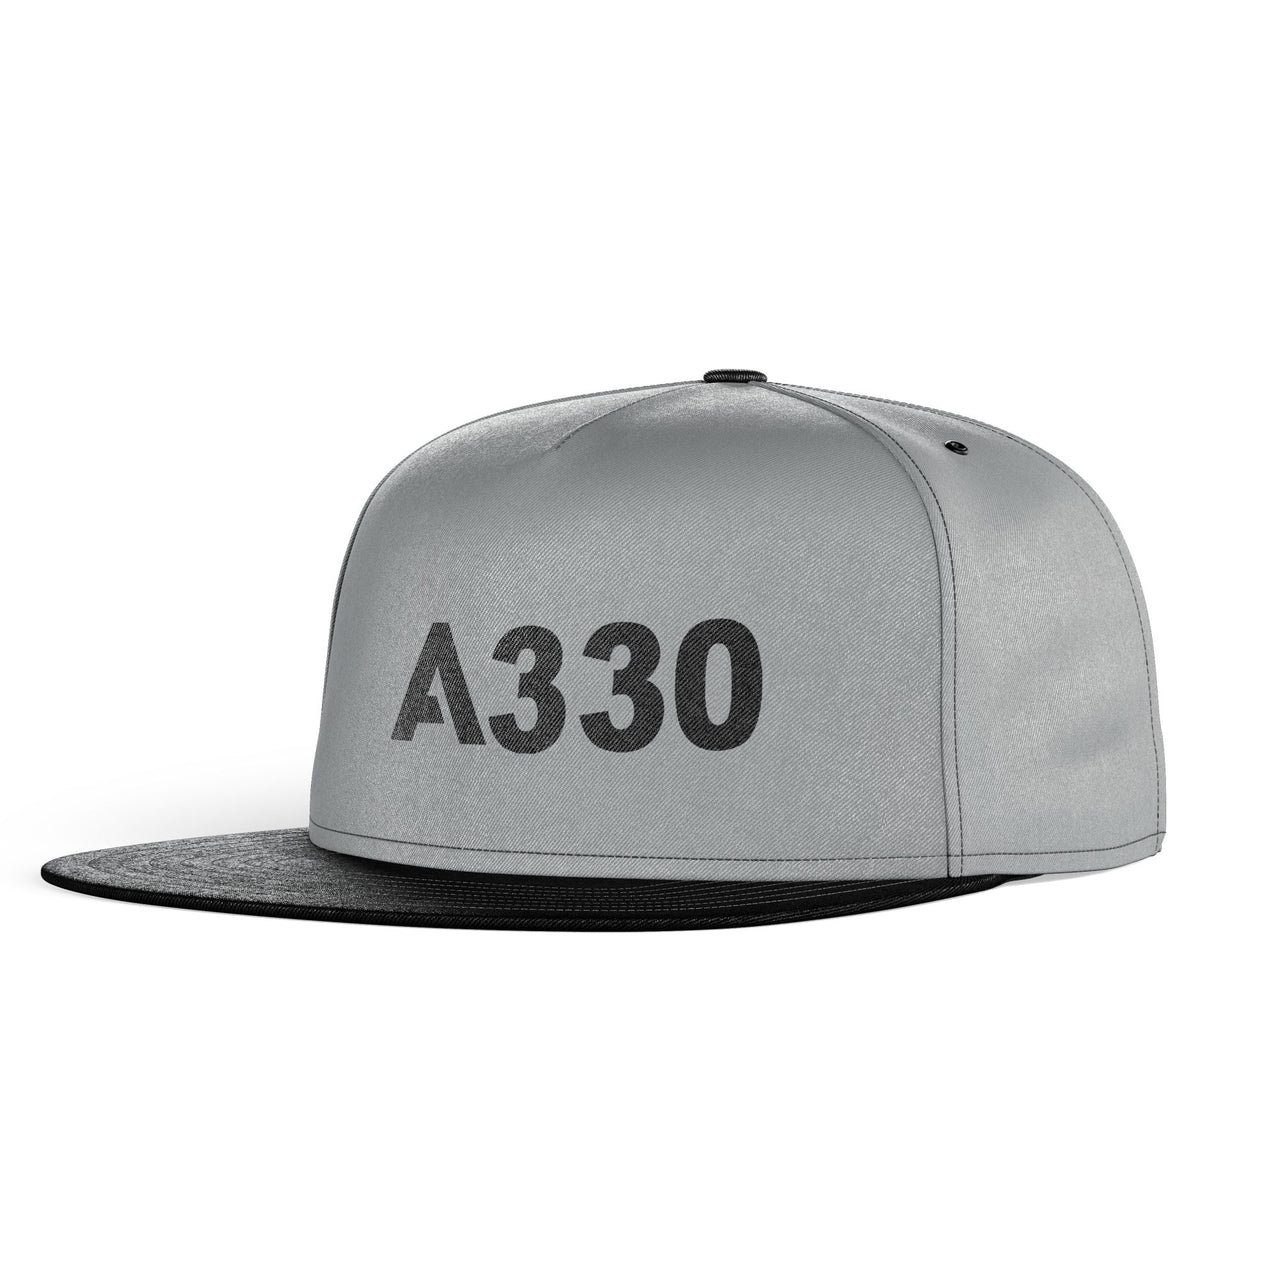 A330 Flat Text Designed Snapback Caps & Hats